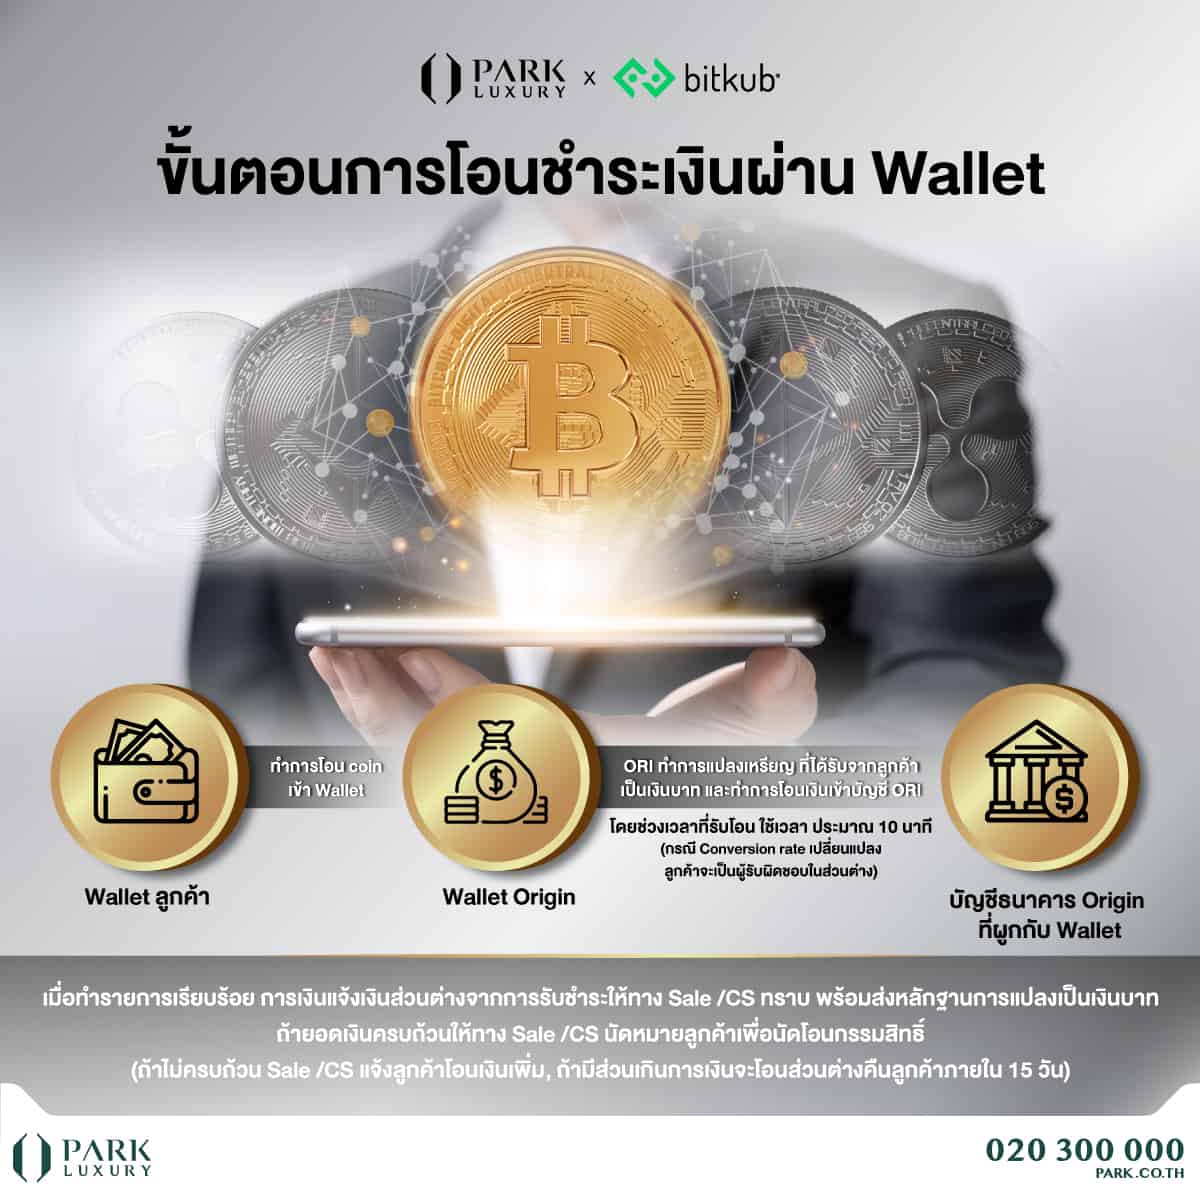 ซื้อคอนโดด้วย Bitcoin “ออริจิ้น” ผนึก “Bitkub” ยกระดับการซื้ออสังหาไทย